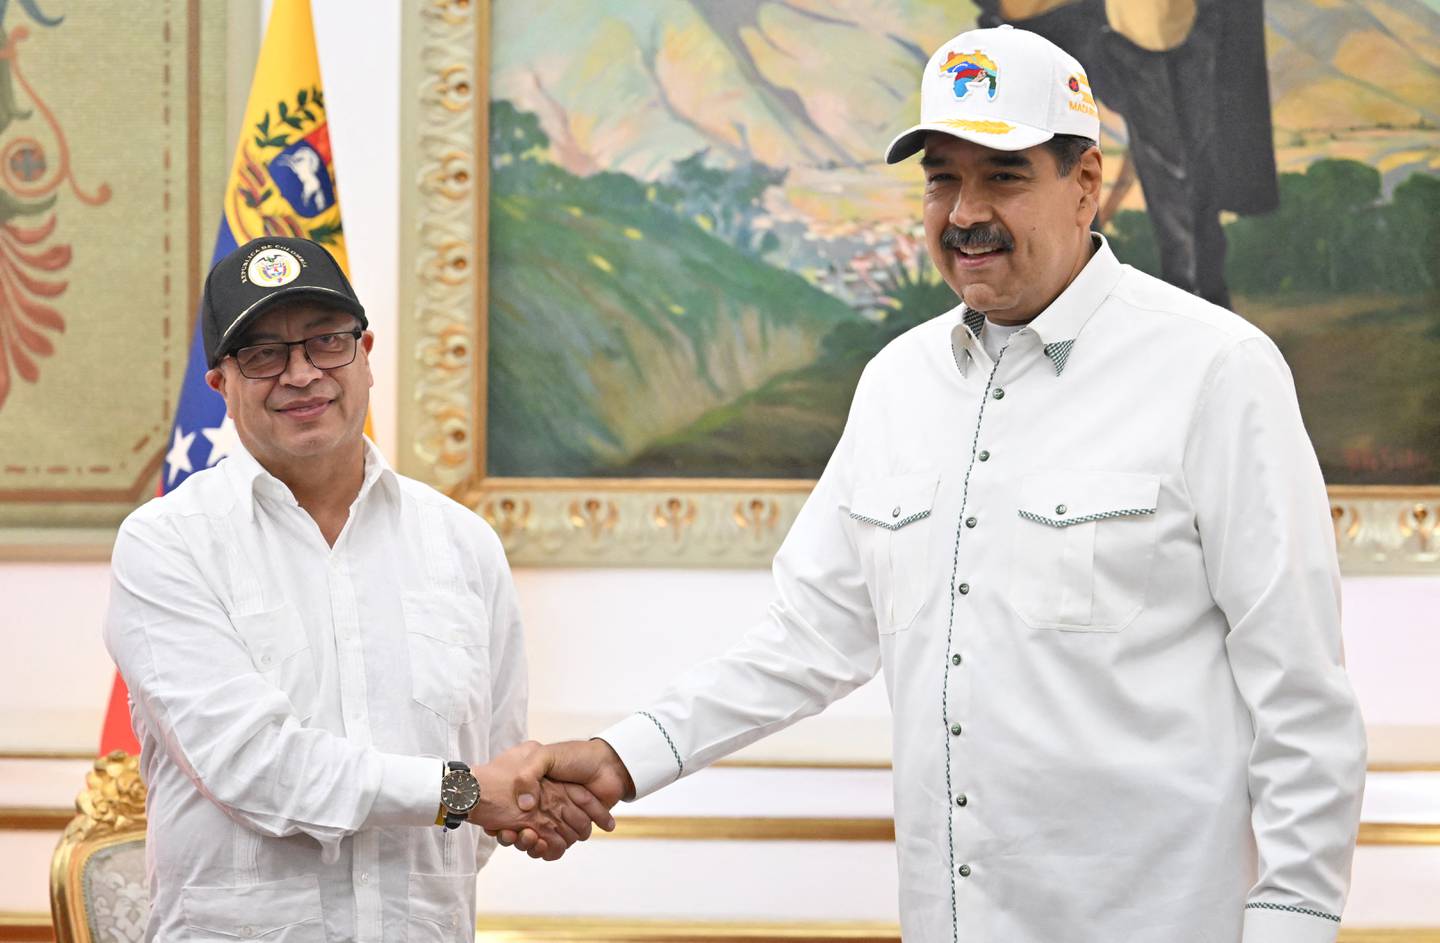 El presidente colombiano Gustavo Petro (izq.) le da la mano a su homólogo venezolano, Nicolás Maduro, durante una visita oficial al Palacio de Miraflores en Caracas.